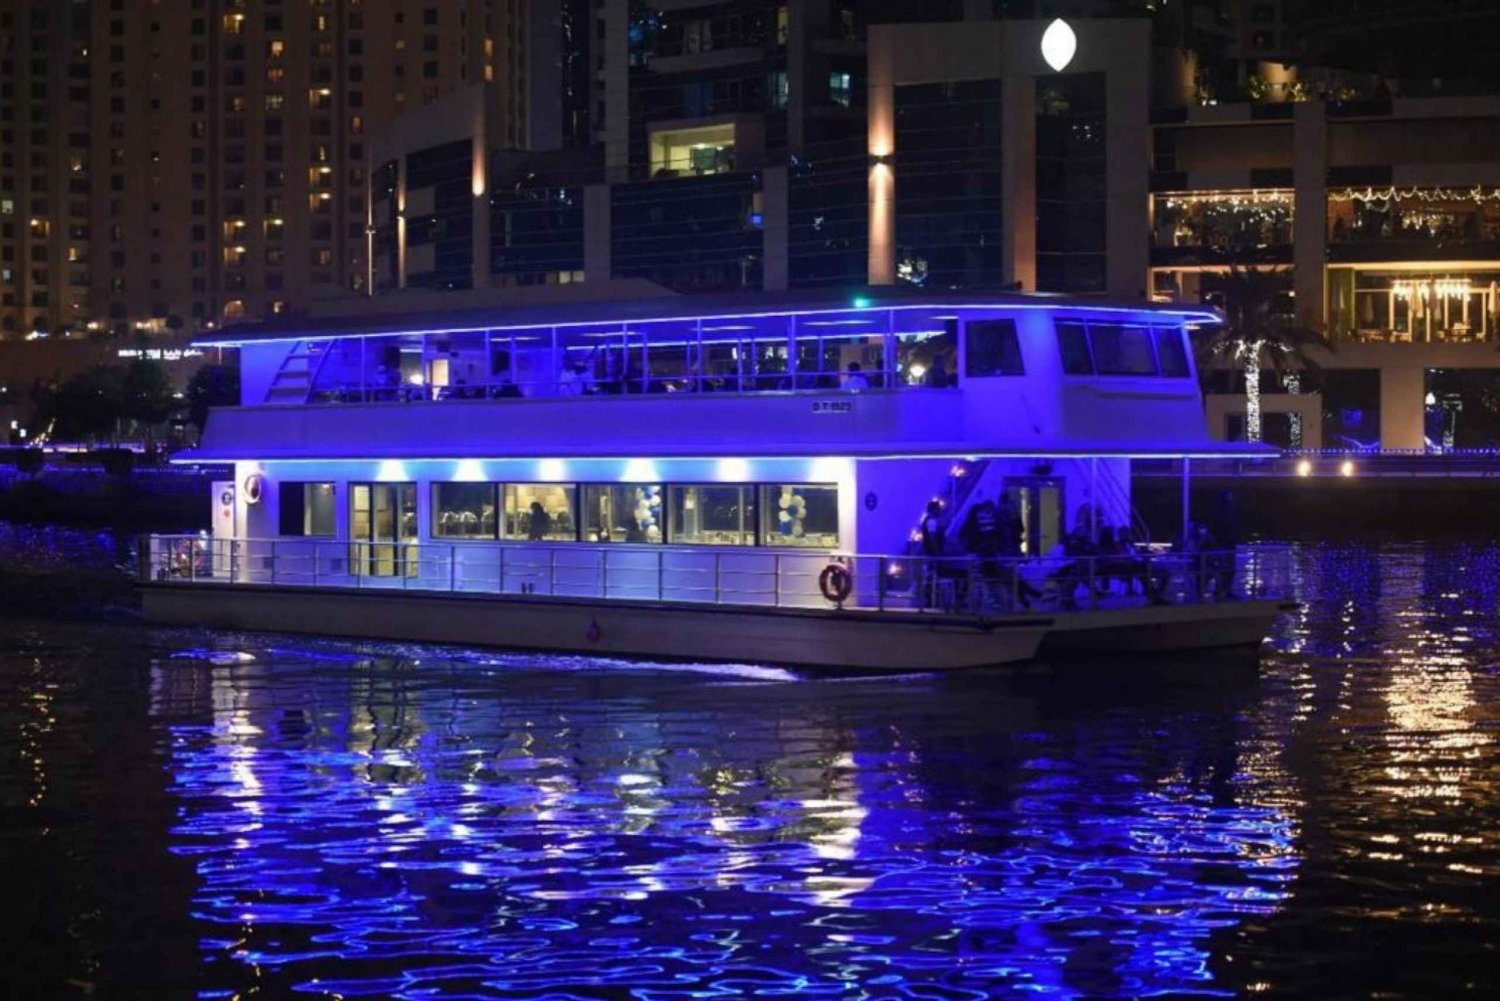 Cena en crucero de lujo en dhow por el puerto deportivo de Dubai (catamarán)